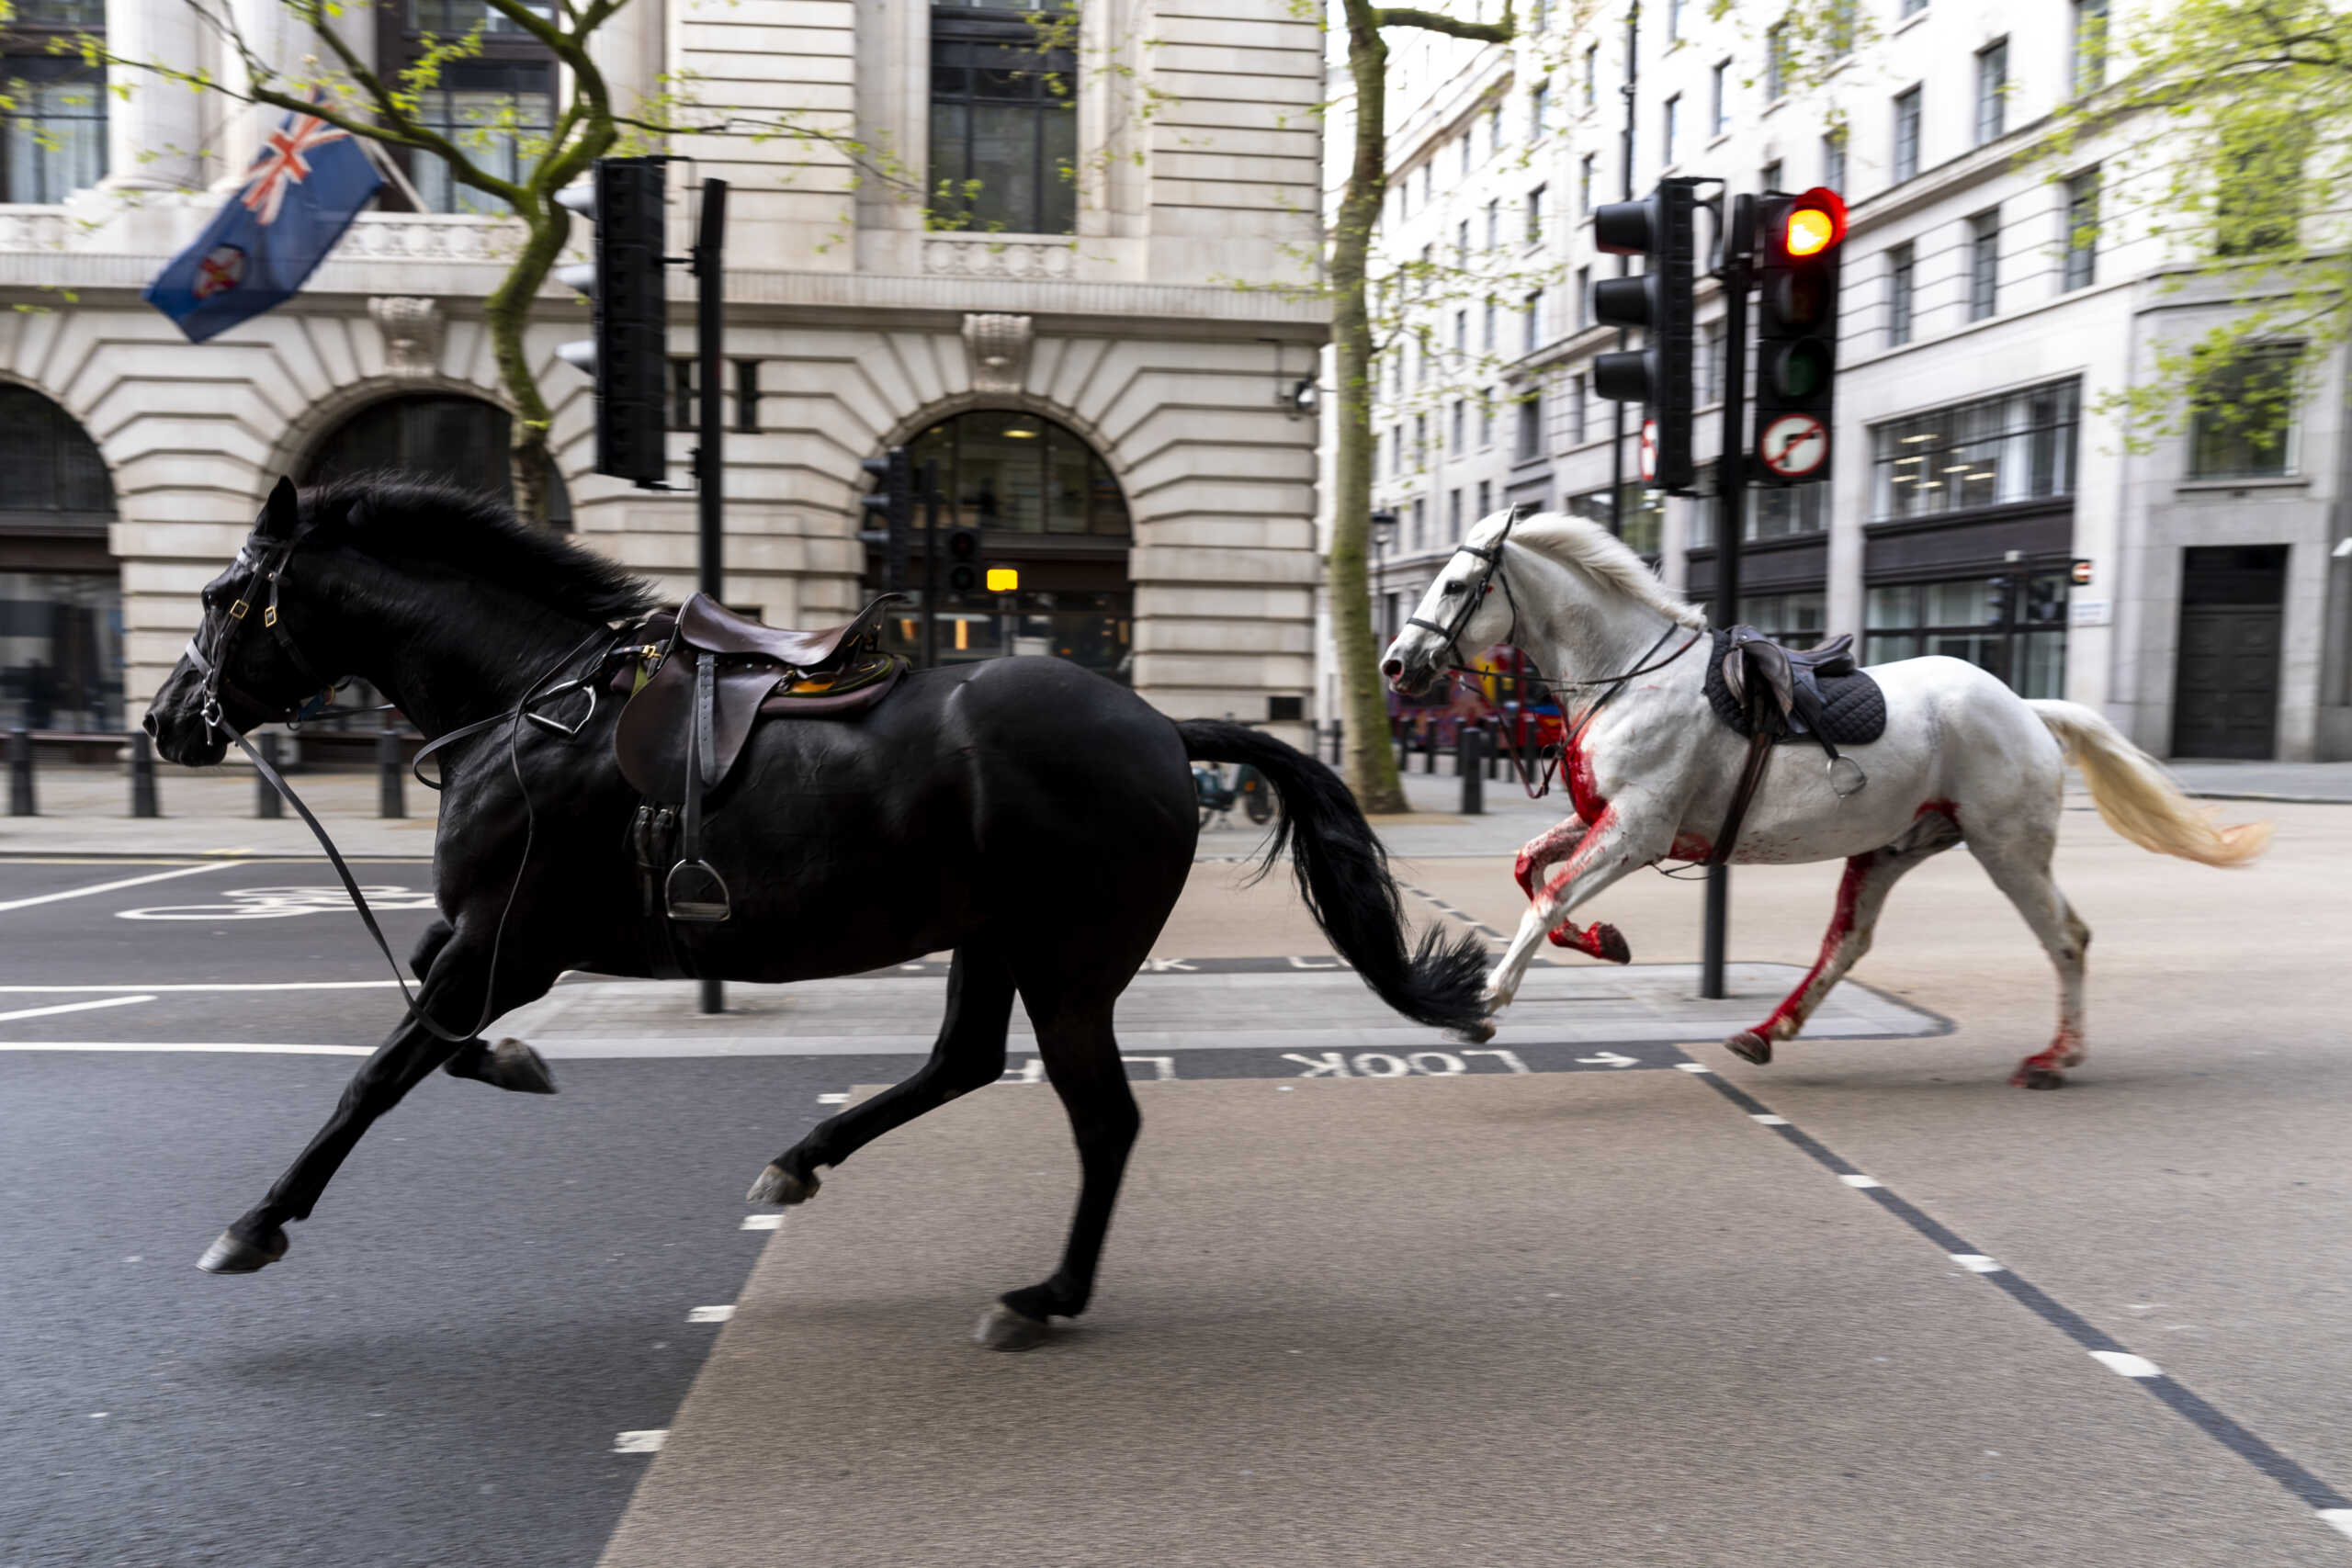 Άλογα τρέχουν ανεξέλεγκτα στο κέντρο του Λονδίνου, το ένα αιμόφυρτο